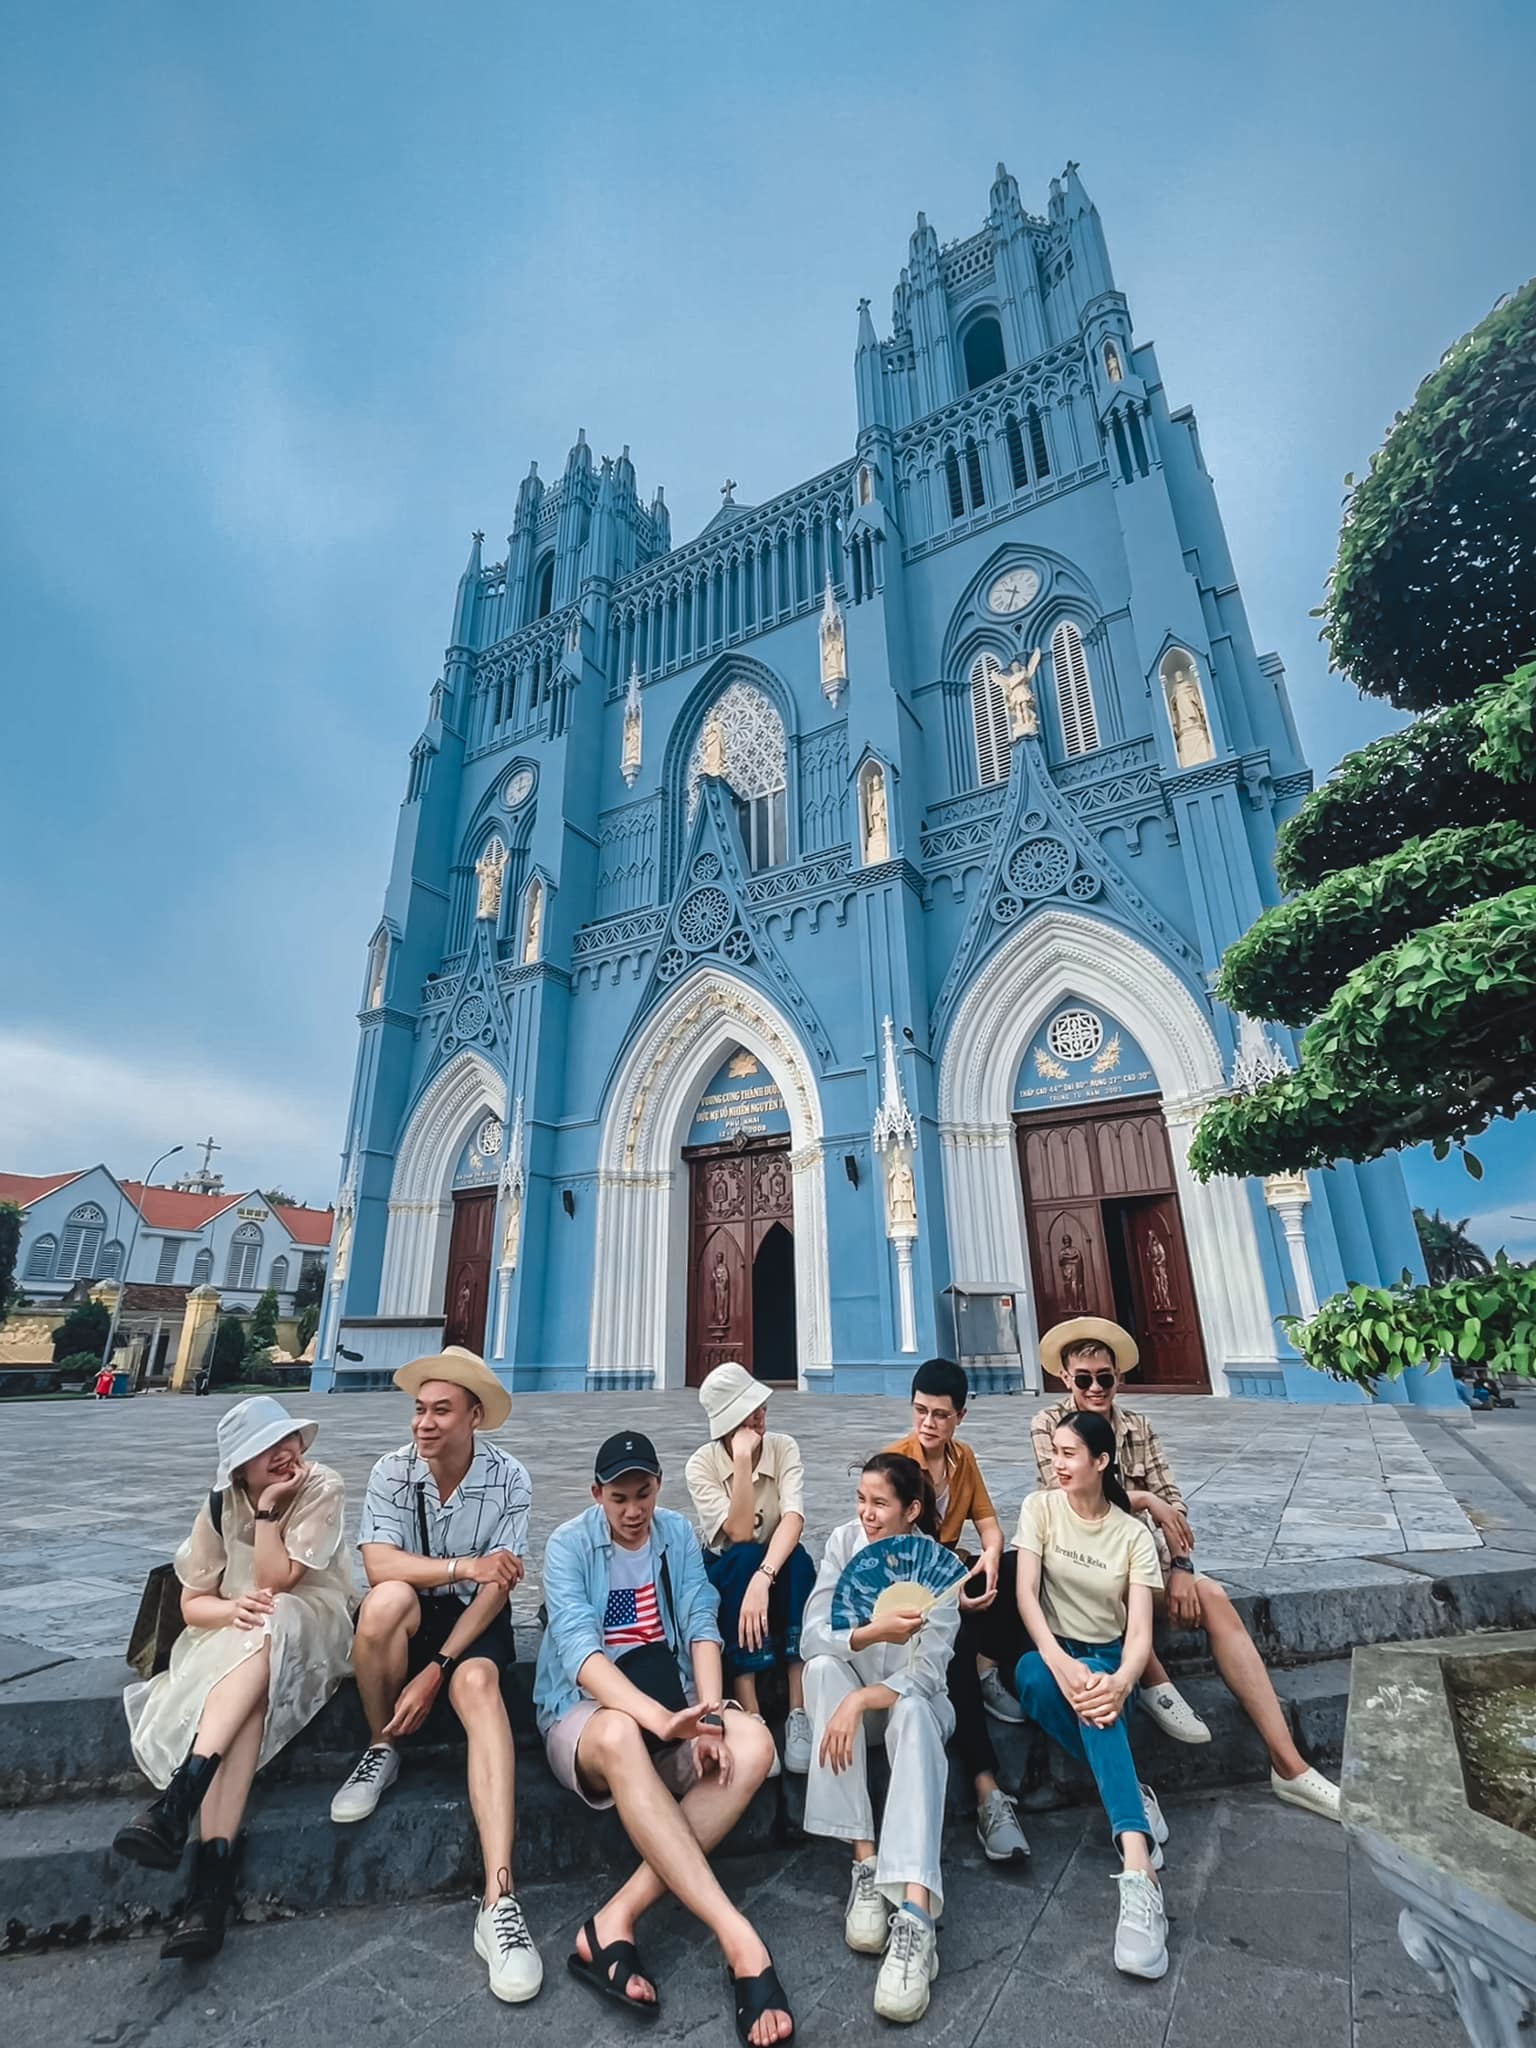 Tour du lịch Nam Định sẽ đưa bạn đến với một vùng đất đầy cảm hứng, nơi bạn sẽ được trải nghiệm văn hóa, lịch sử và ẩm thực độc đáo của miền Bắc. Chuyến đi này sẽ mang lại cho bạn những trải nghiệm đáng nhớ và đậm chất Việt.